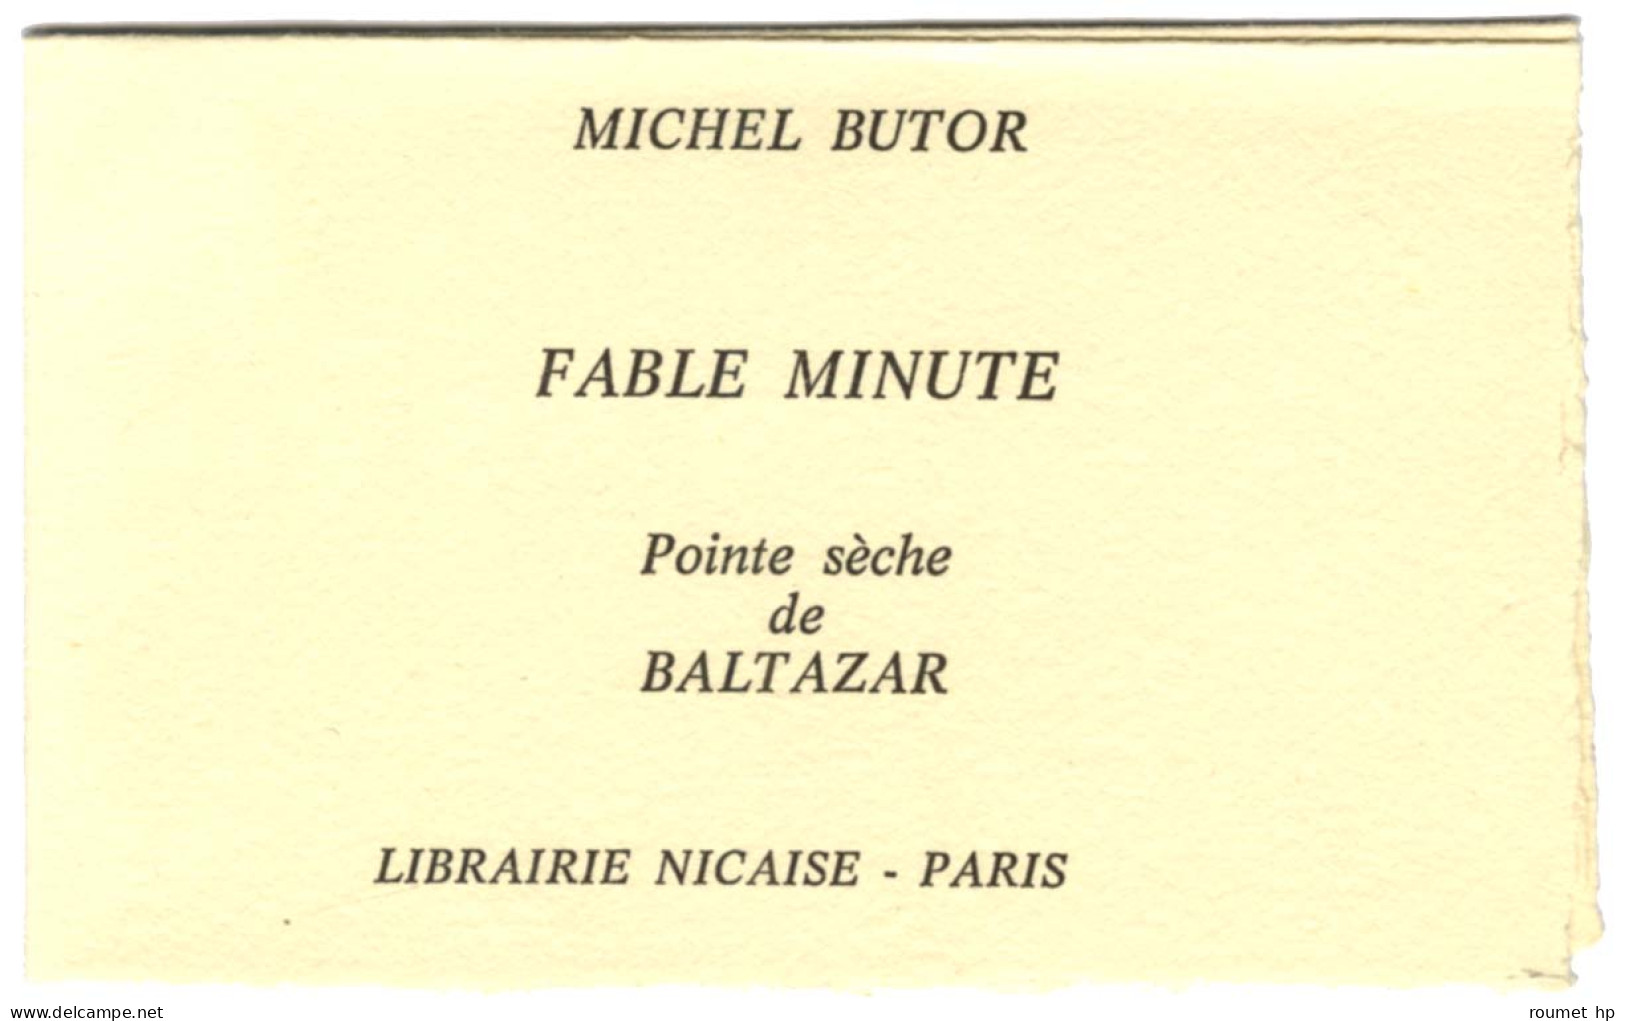 BUTOR Michel (1926-2016), poète, romancier -/- BALTAZAR Julius (né en 1949), peintre, illustrateur.